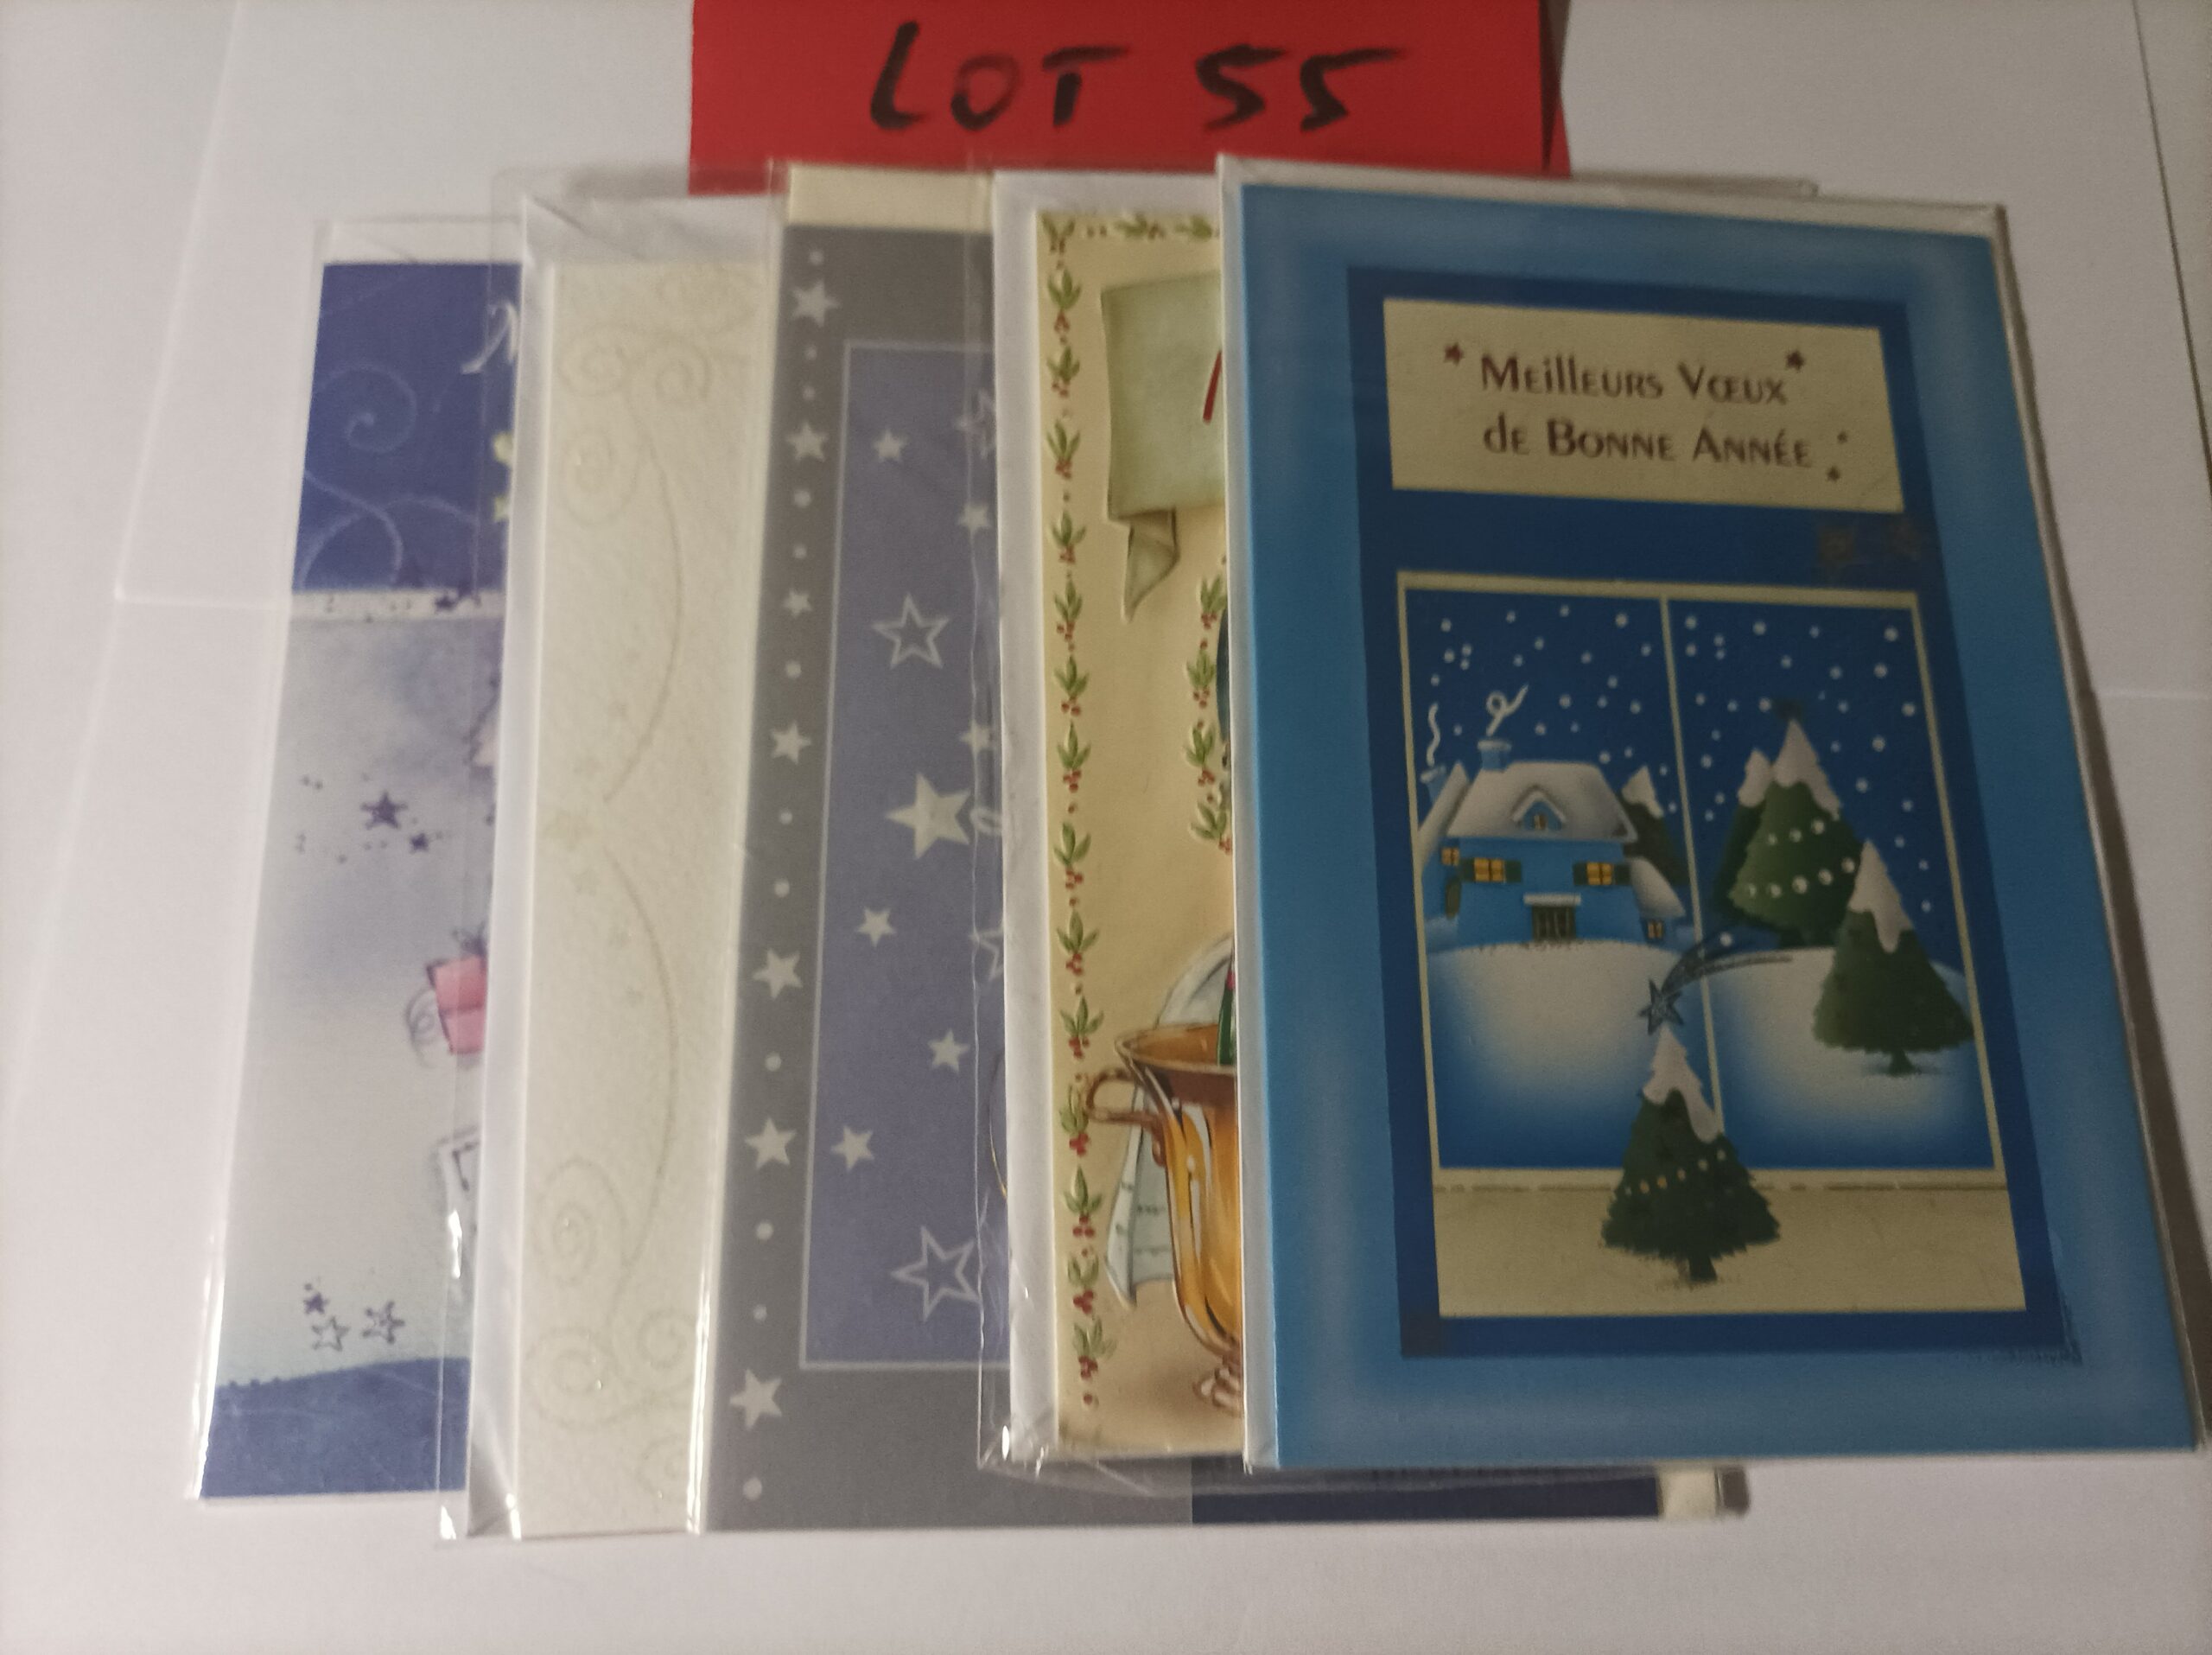 Lot de 5 cartes postales doubles avec enveloppes meilleurs vœux (lot 55)